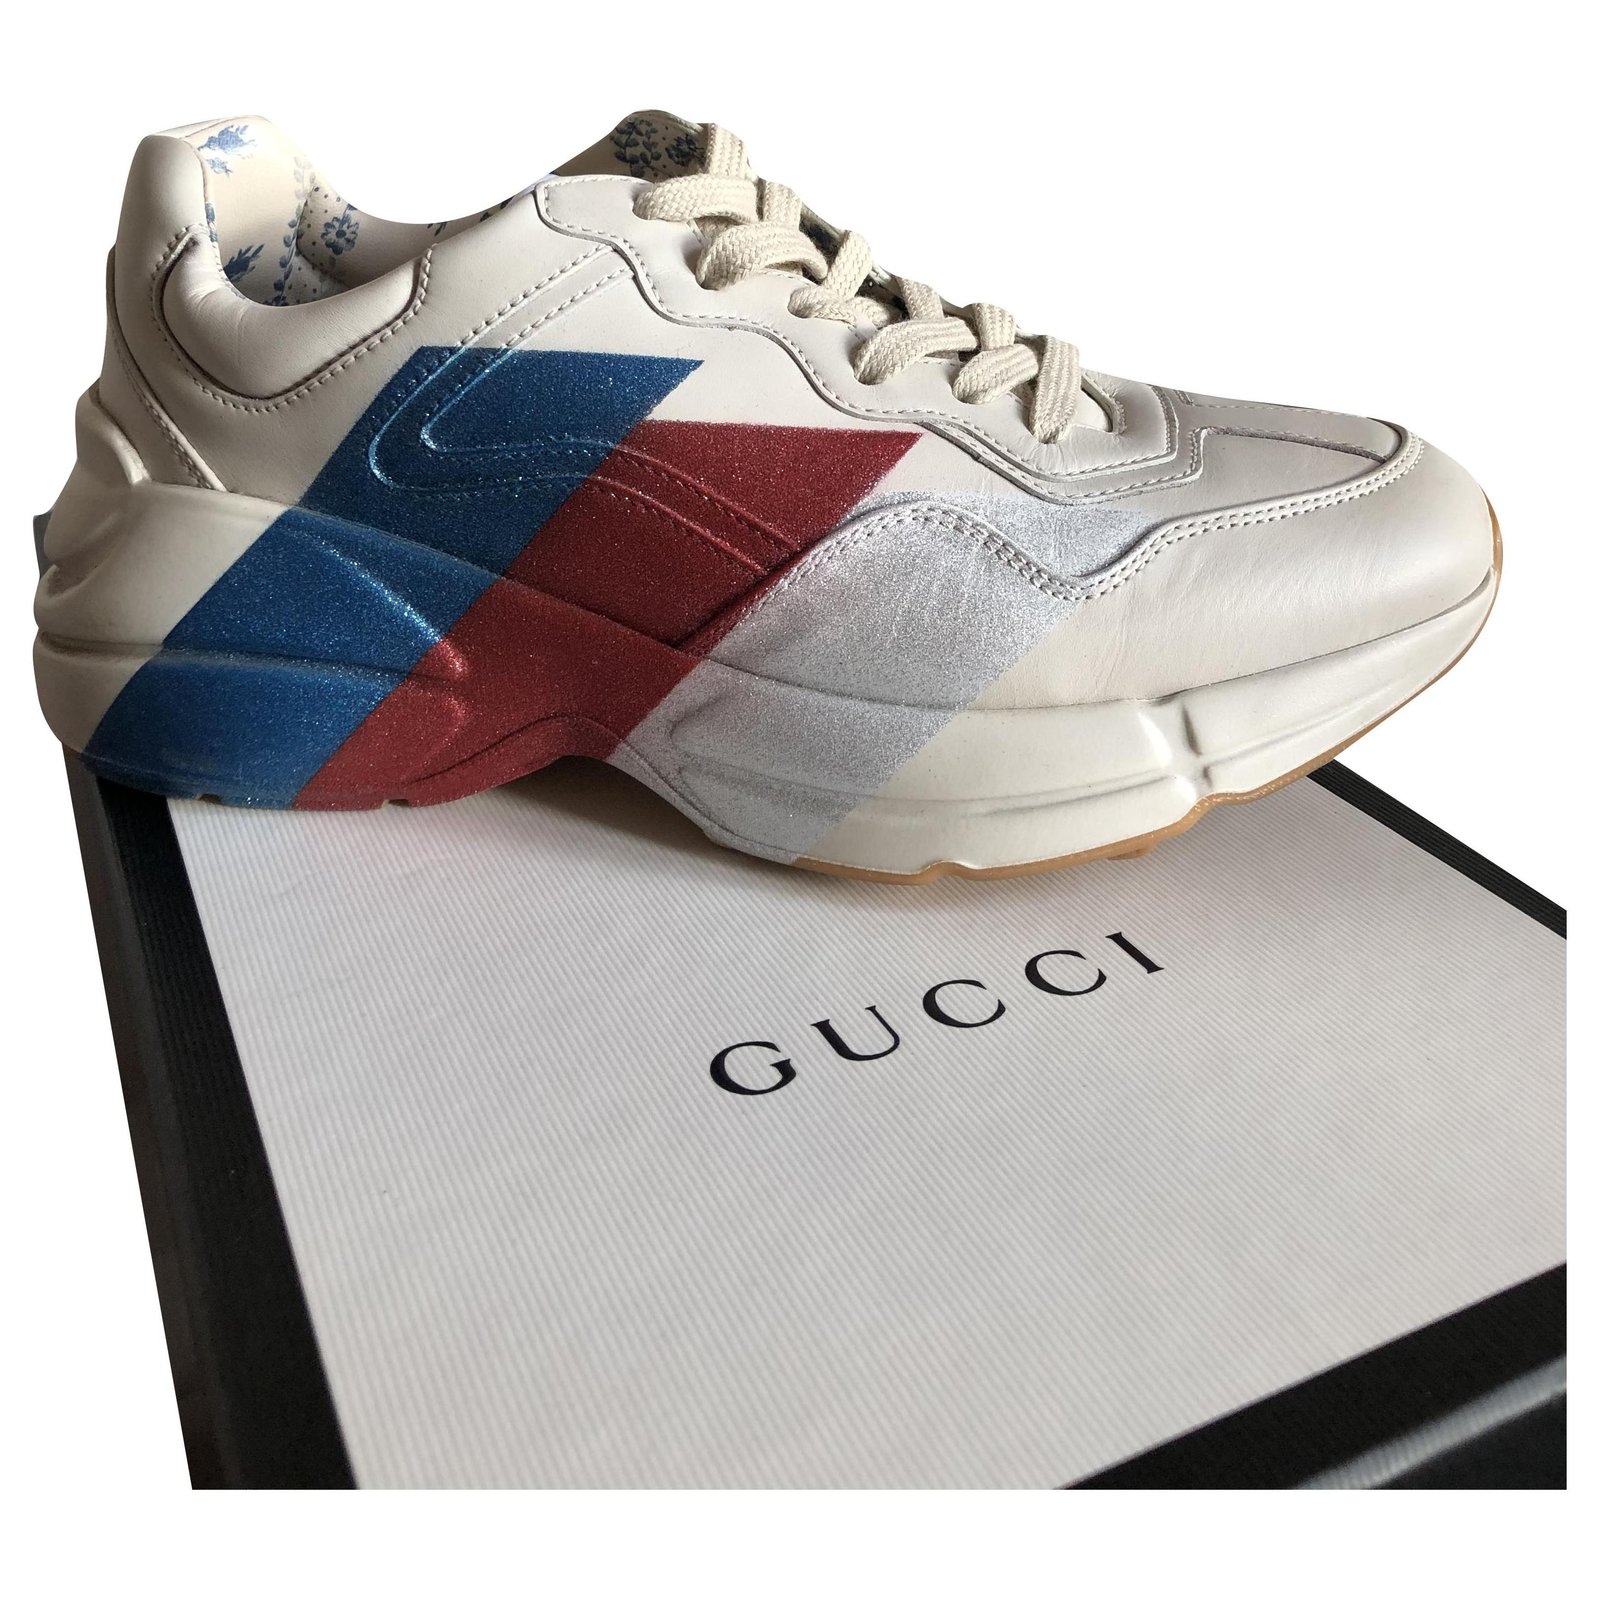 gucci cream shoes